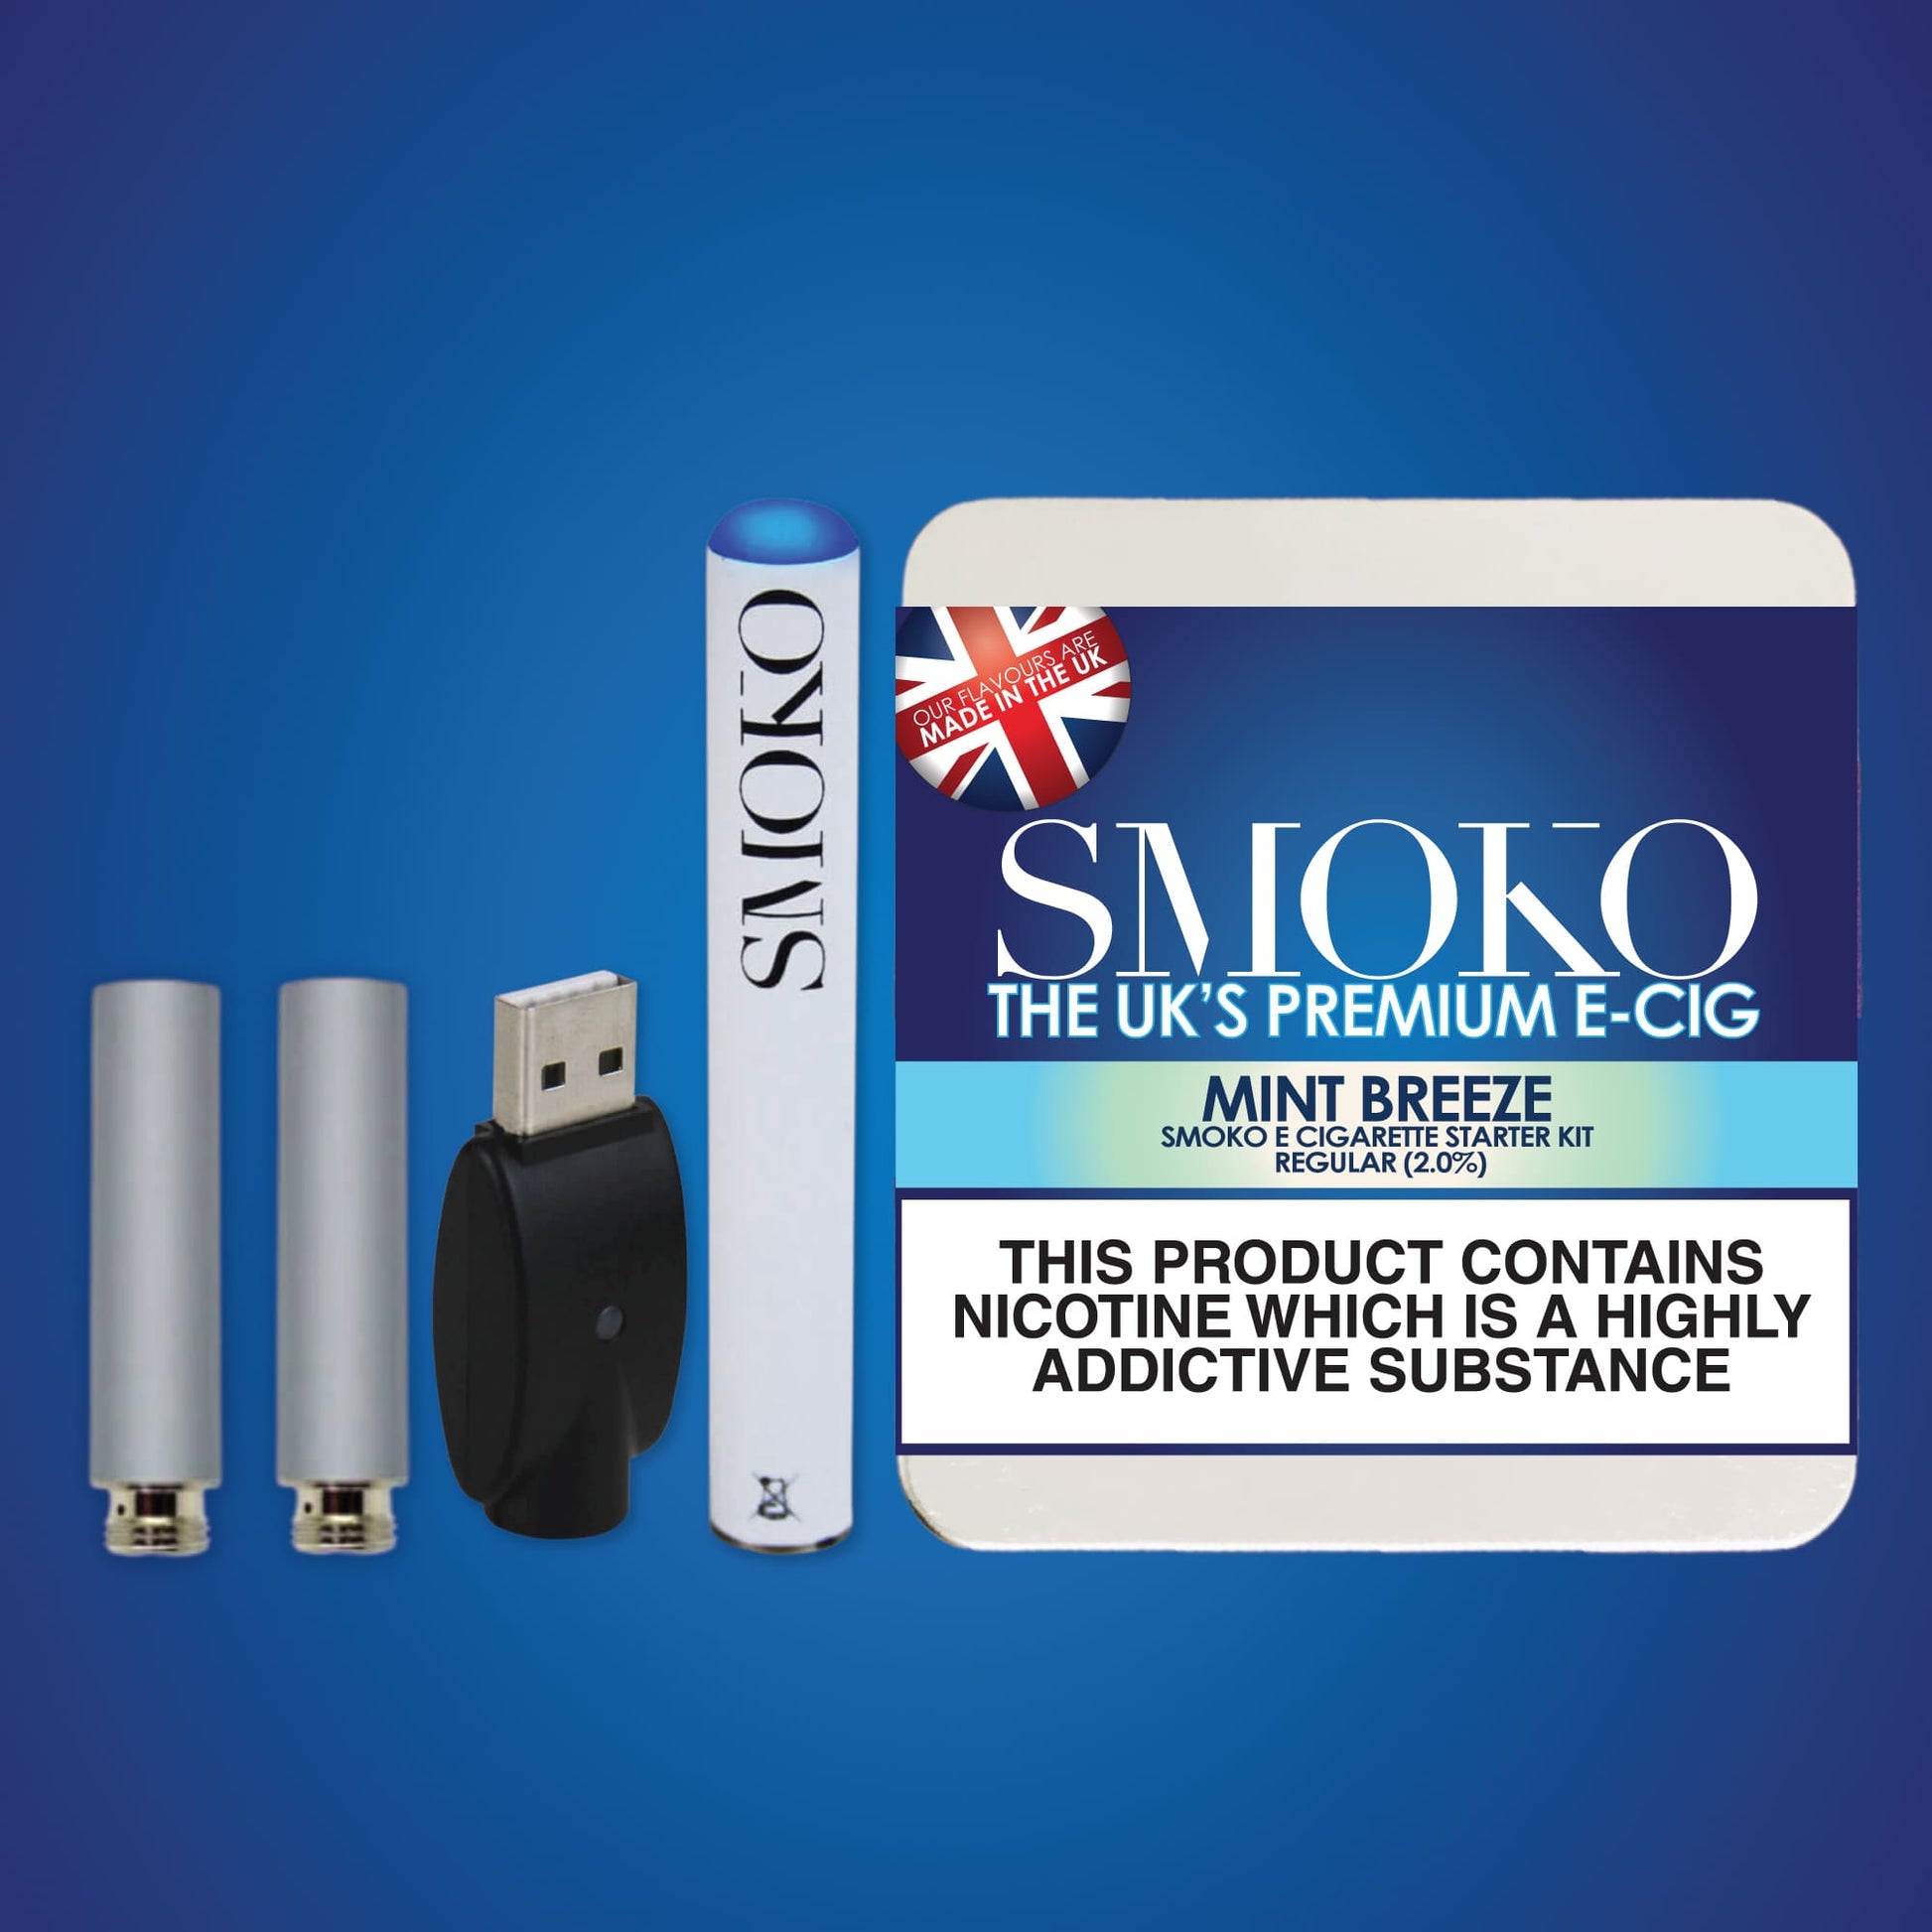 Das beste Starter-Kit für E-Zigaretten (Cigalike) im Vereinigten Königreich. E-Zigaretten-Starter-Kit SMOKO Minzbrise-Geschmack